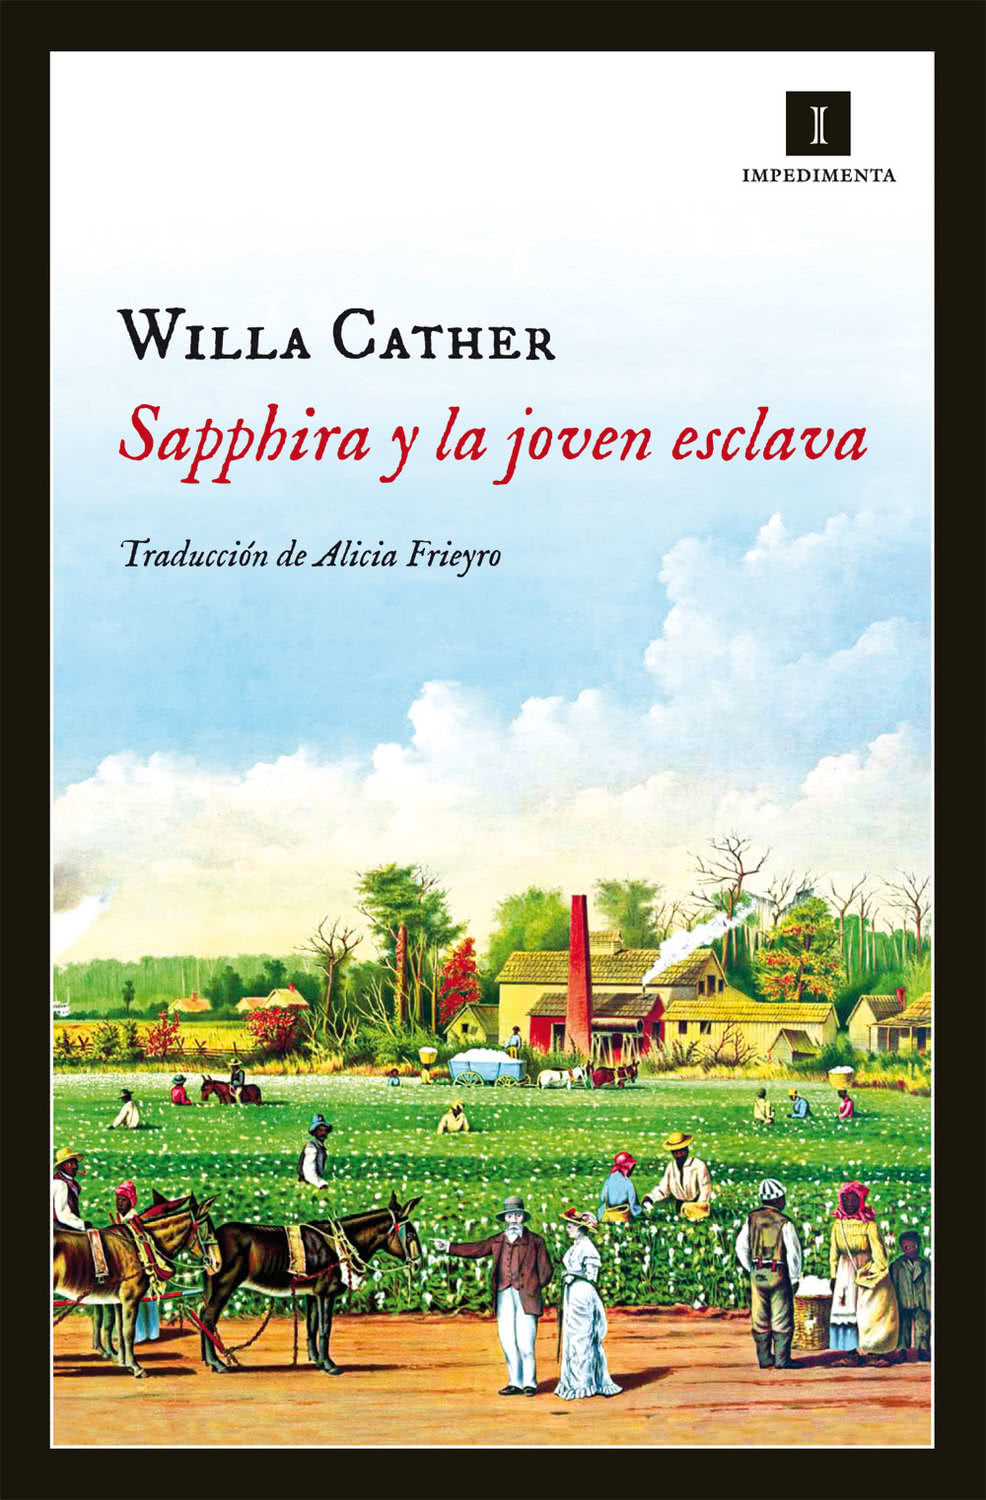 Willa Cather. Sapphira y la joven esclava. Impedimenta